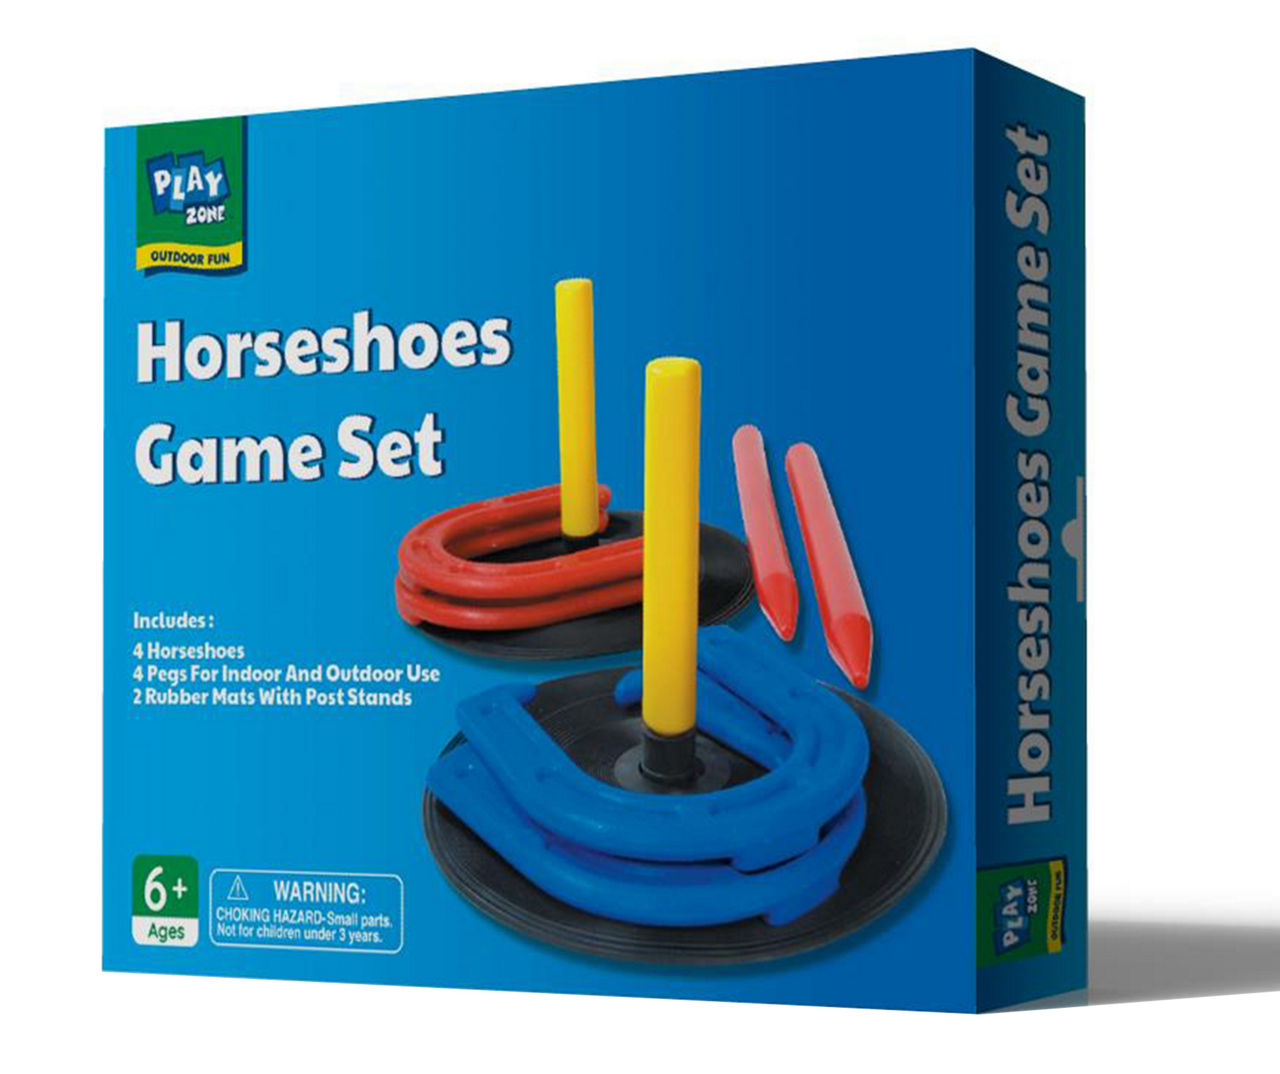 Play Zone Horseshoes Game Set